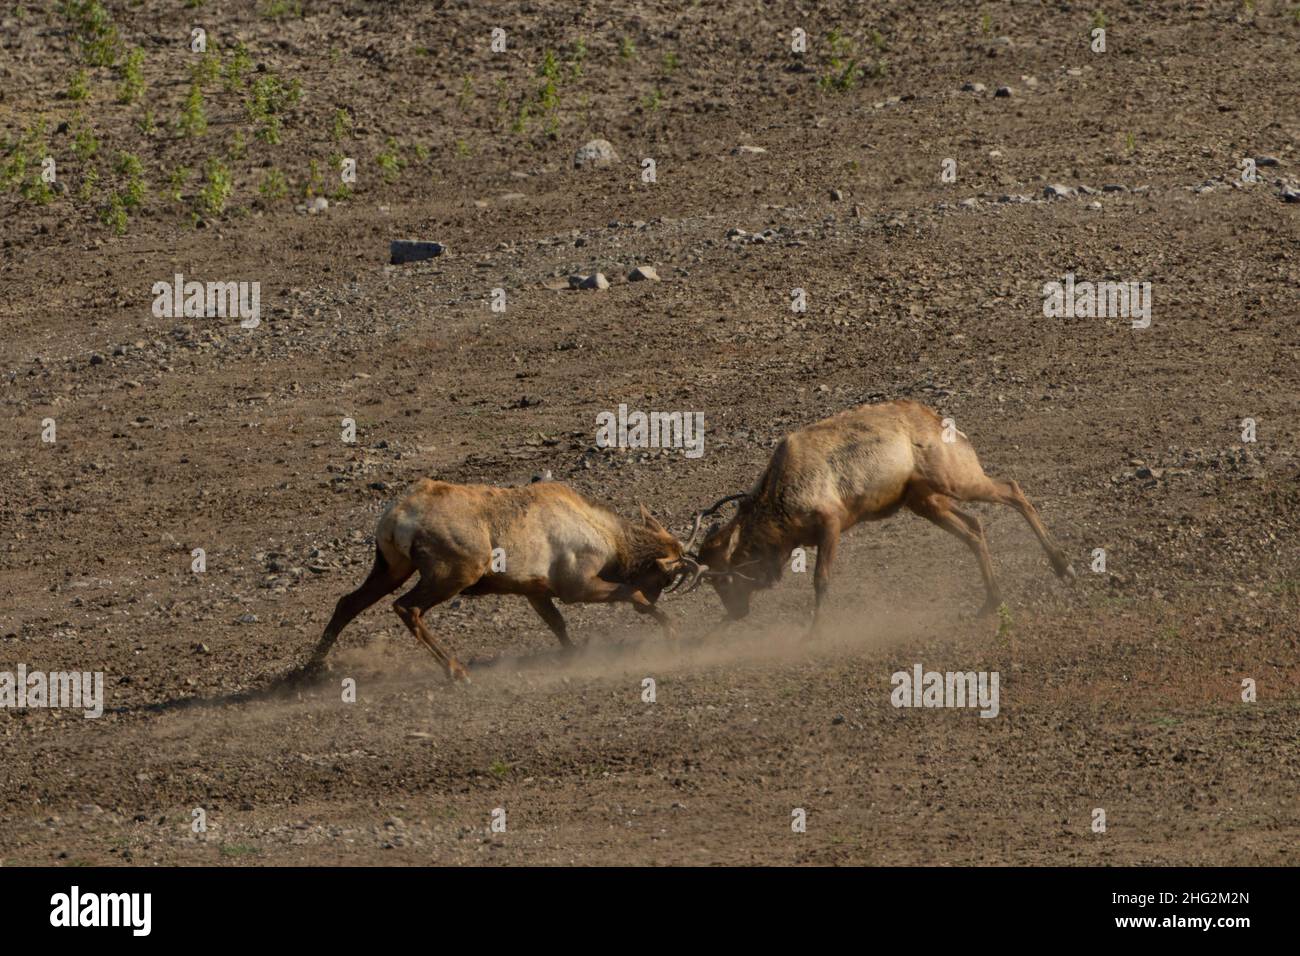 Tule Elk Bulls, Cervus nannodes, qui scinde pendant la saison de rututage annuelle dans un habitat de pied-de-fée dans la chaîne côtière de Californie. Banque D'Images